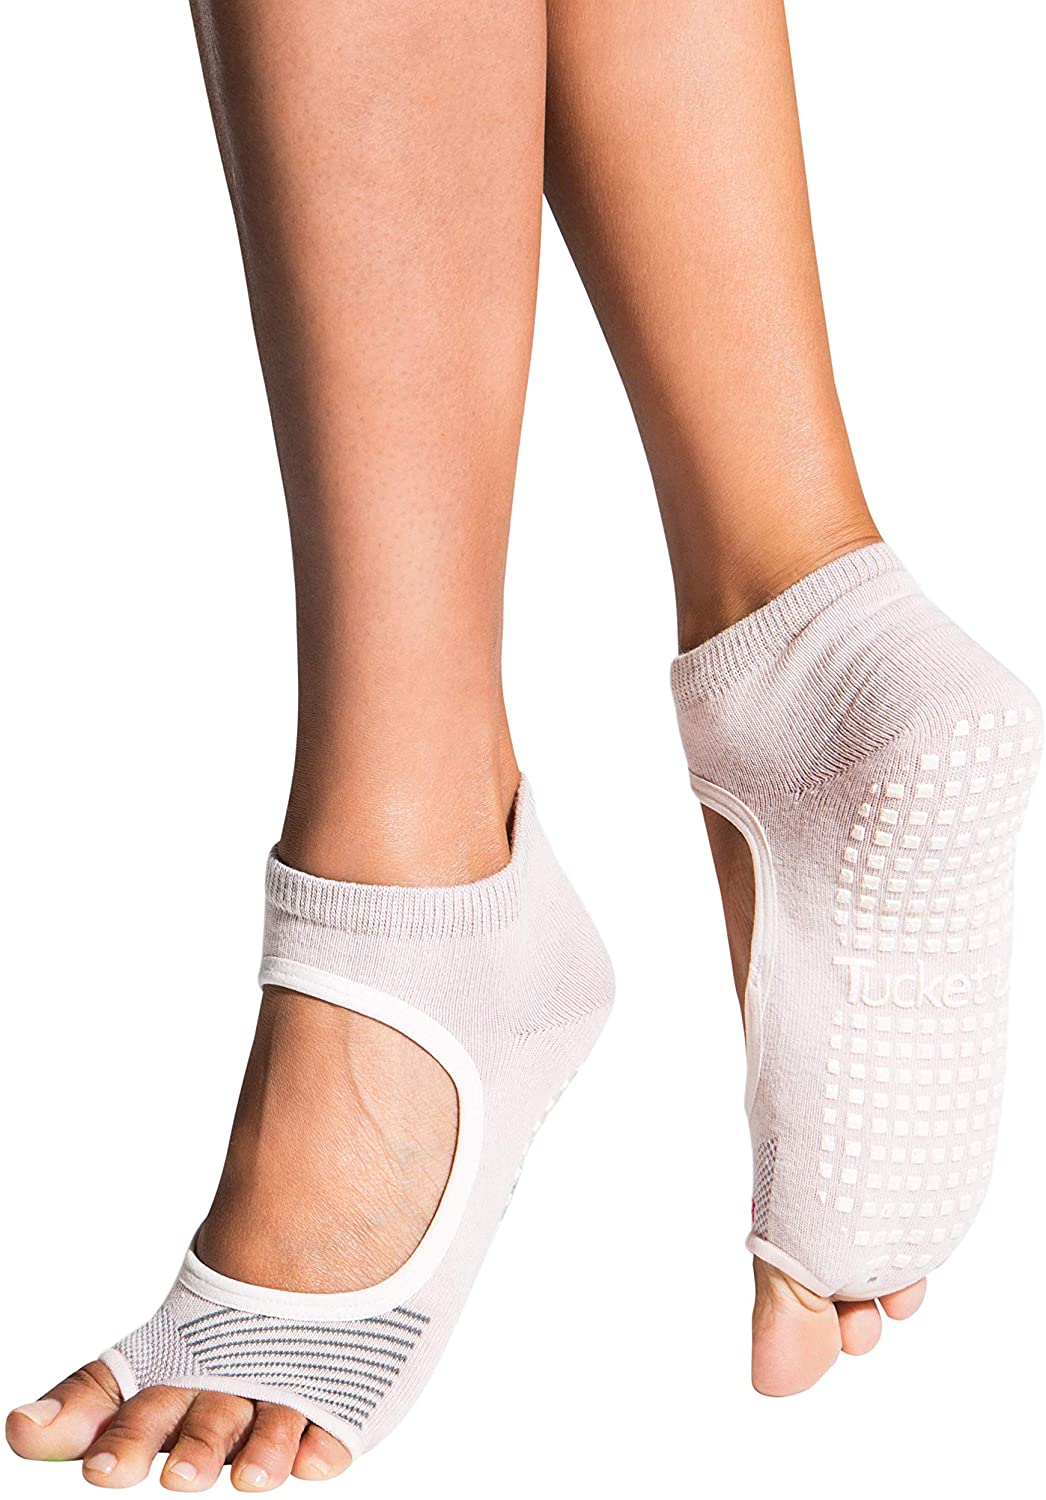 Calcetines de yoga para mujer, 3 pares de agarre antideslizante con correas  de tobillo media punta calcetines para ballet Pilates Barre Dance